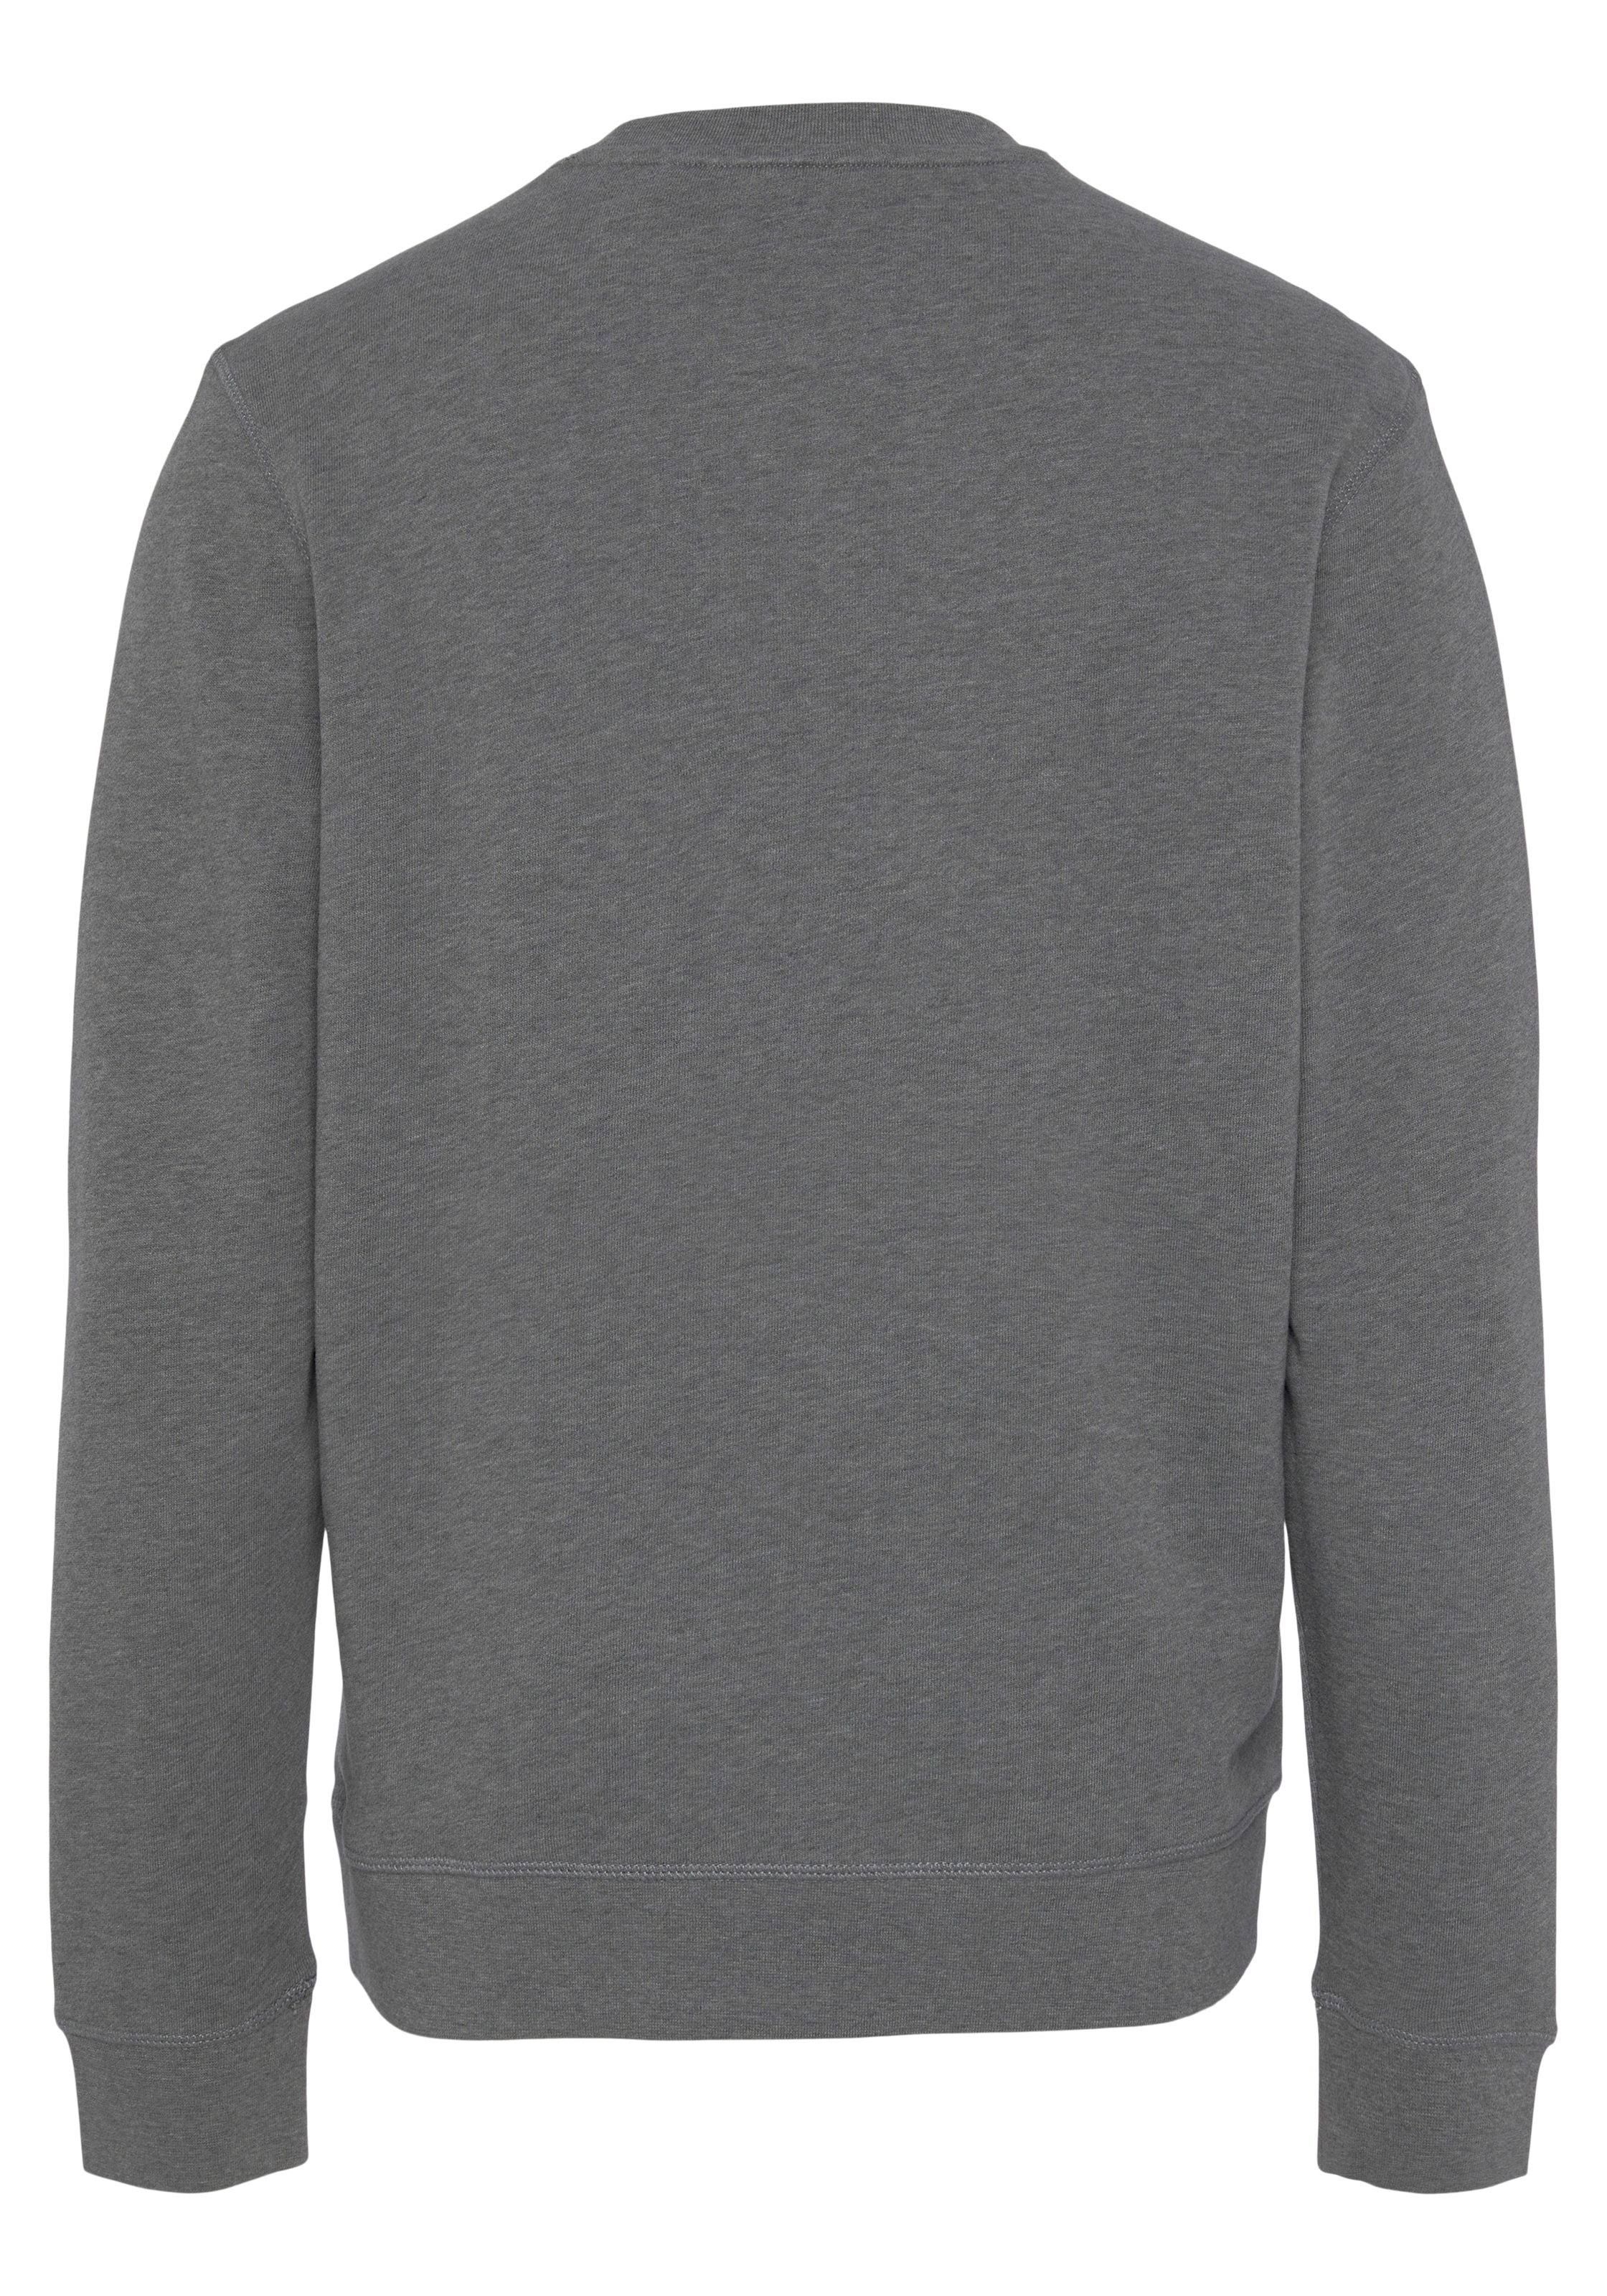 versandkostenfrei ➤ bestellen Sweatshirts